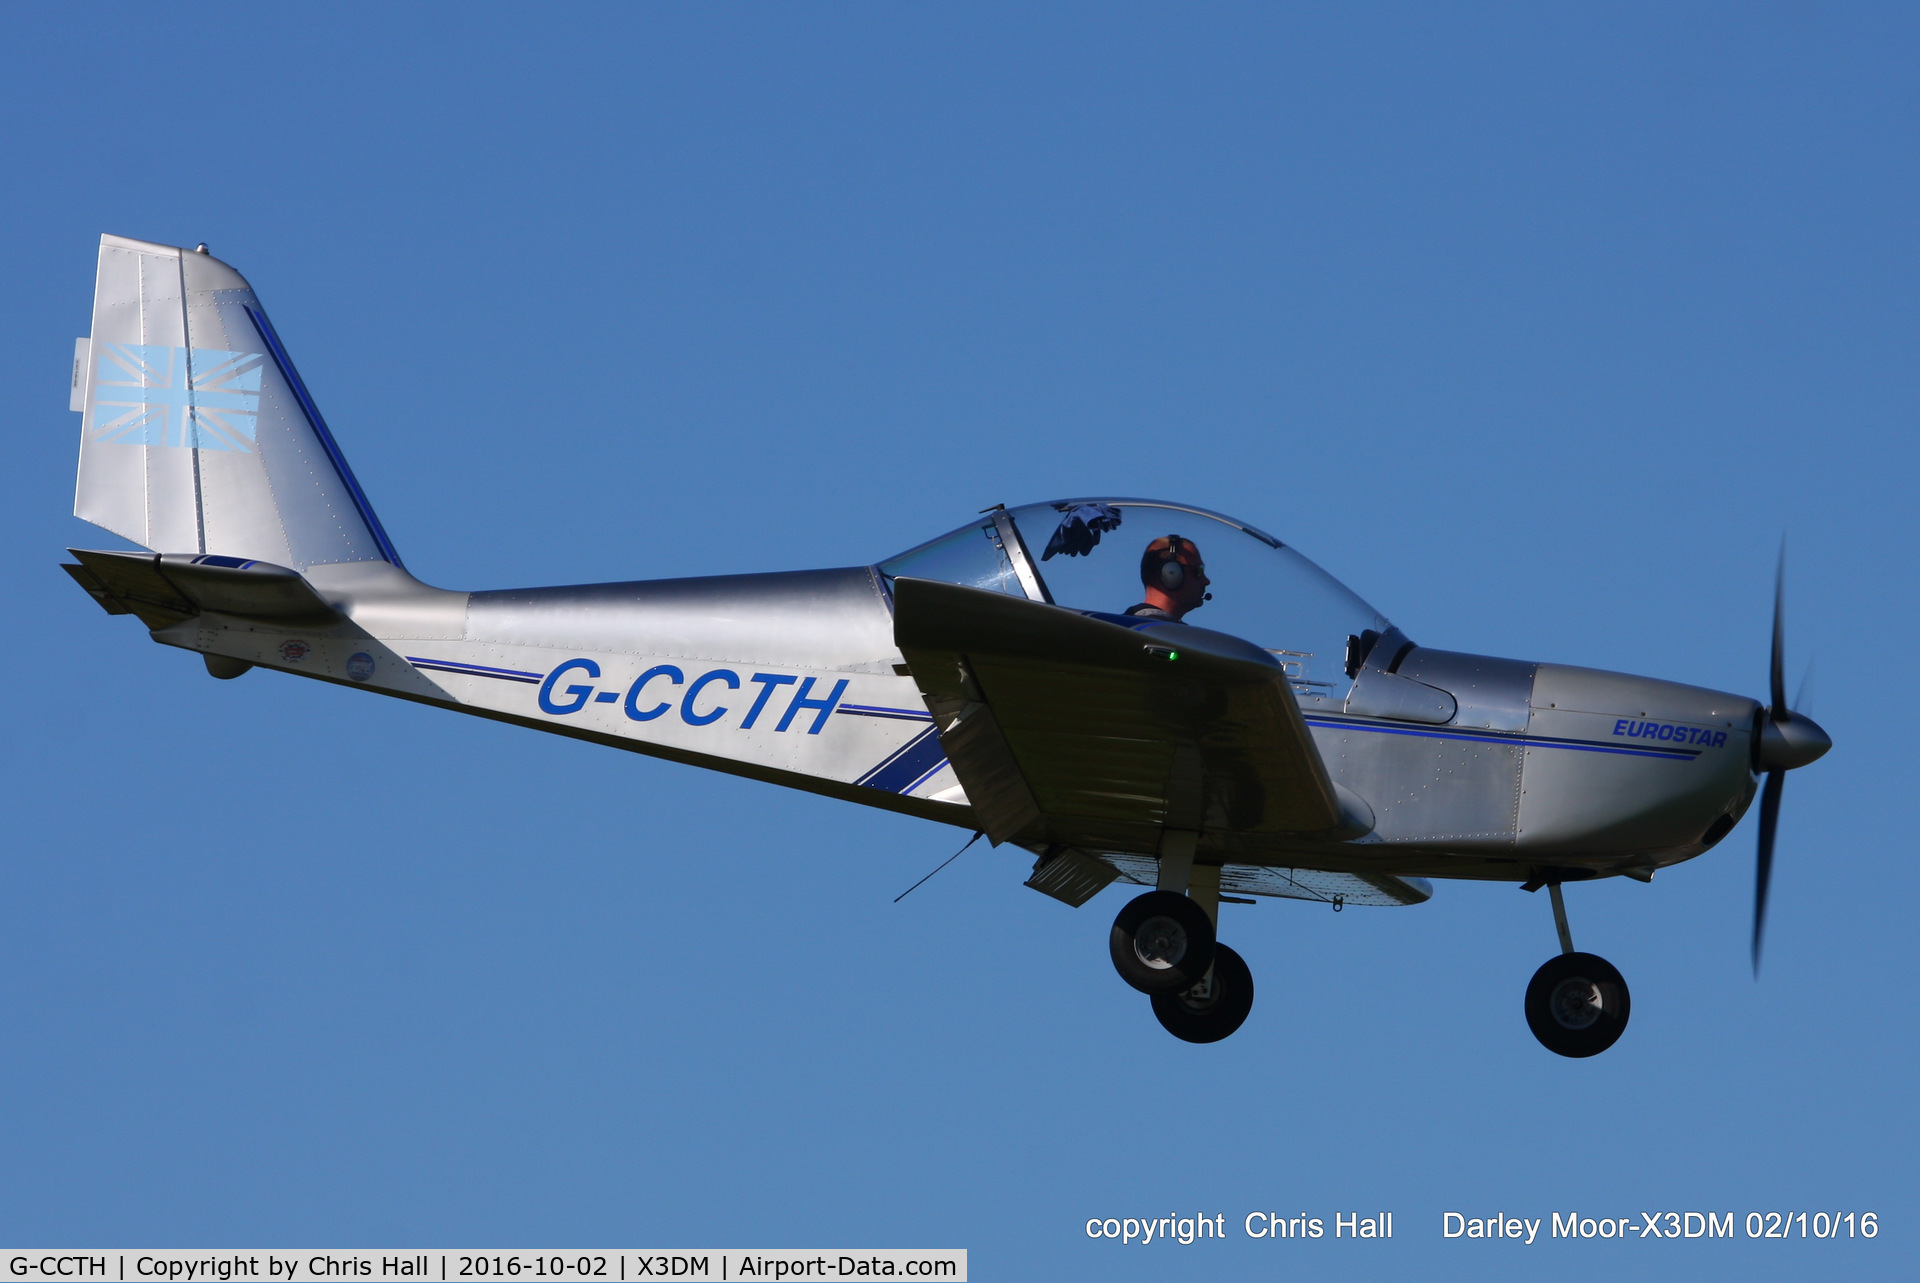 G-CCTH, 2004 Cosmik EV-97 TeamEurostar UK C/N 2005, at Darley Moor Airfield